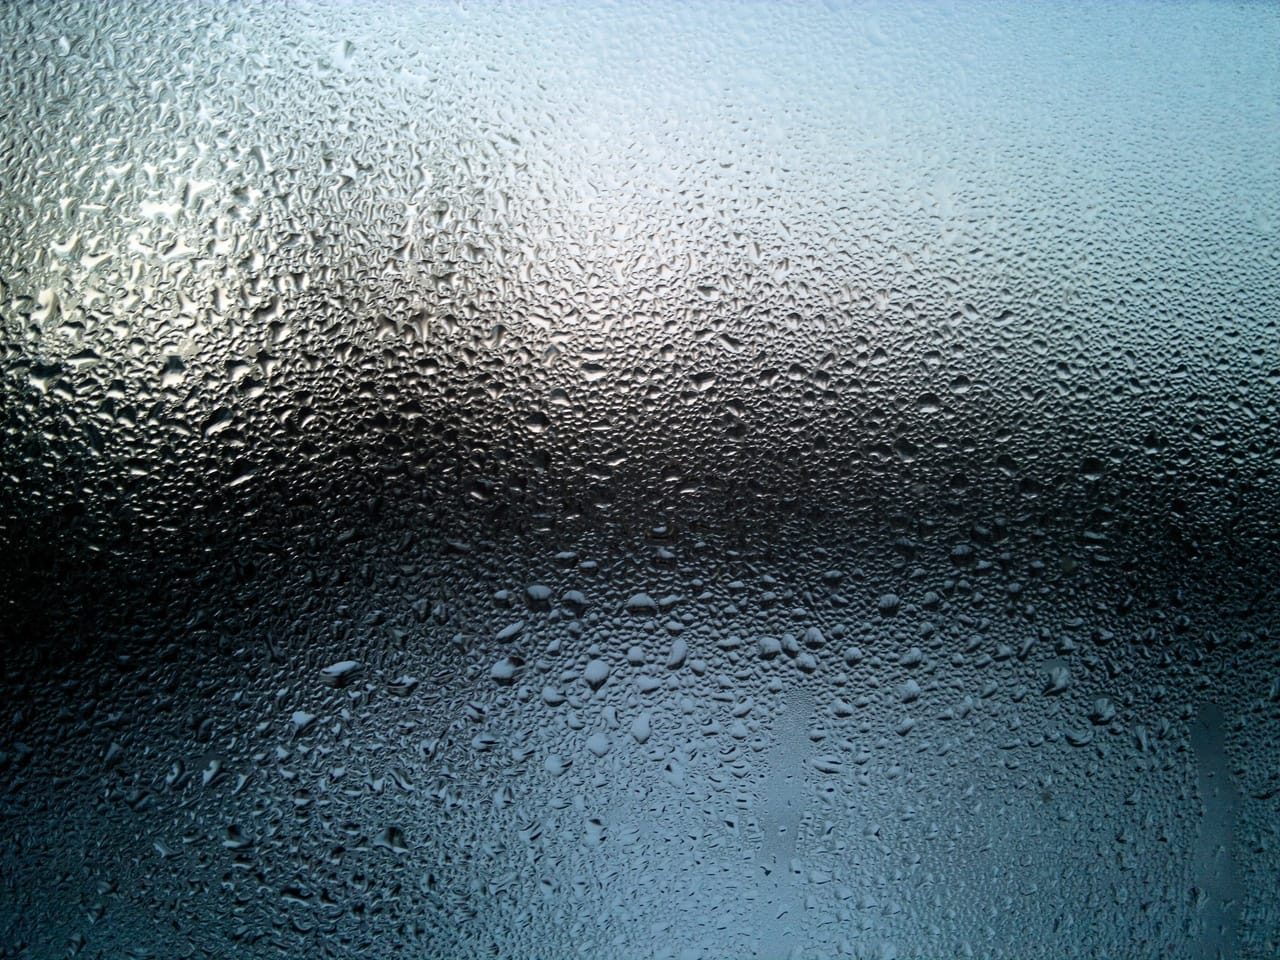 moisture-on-window